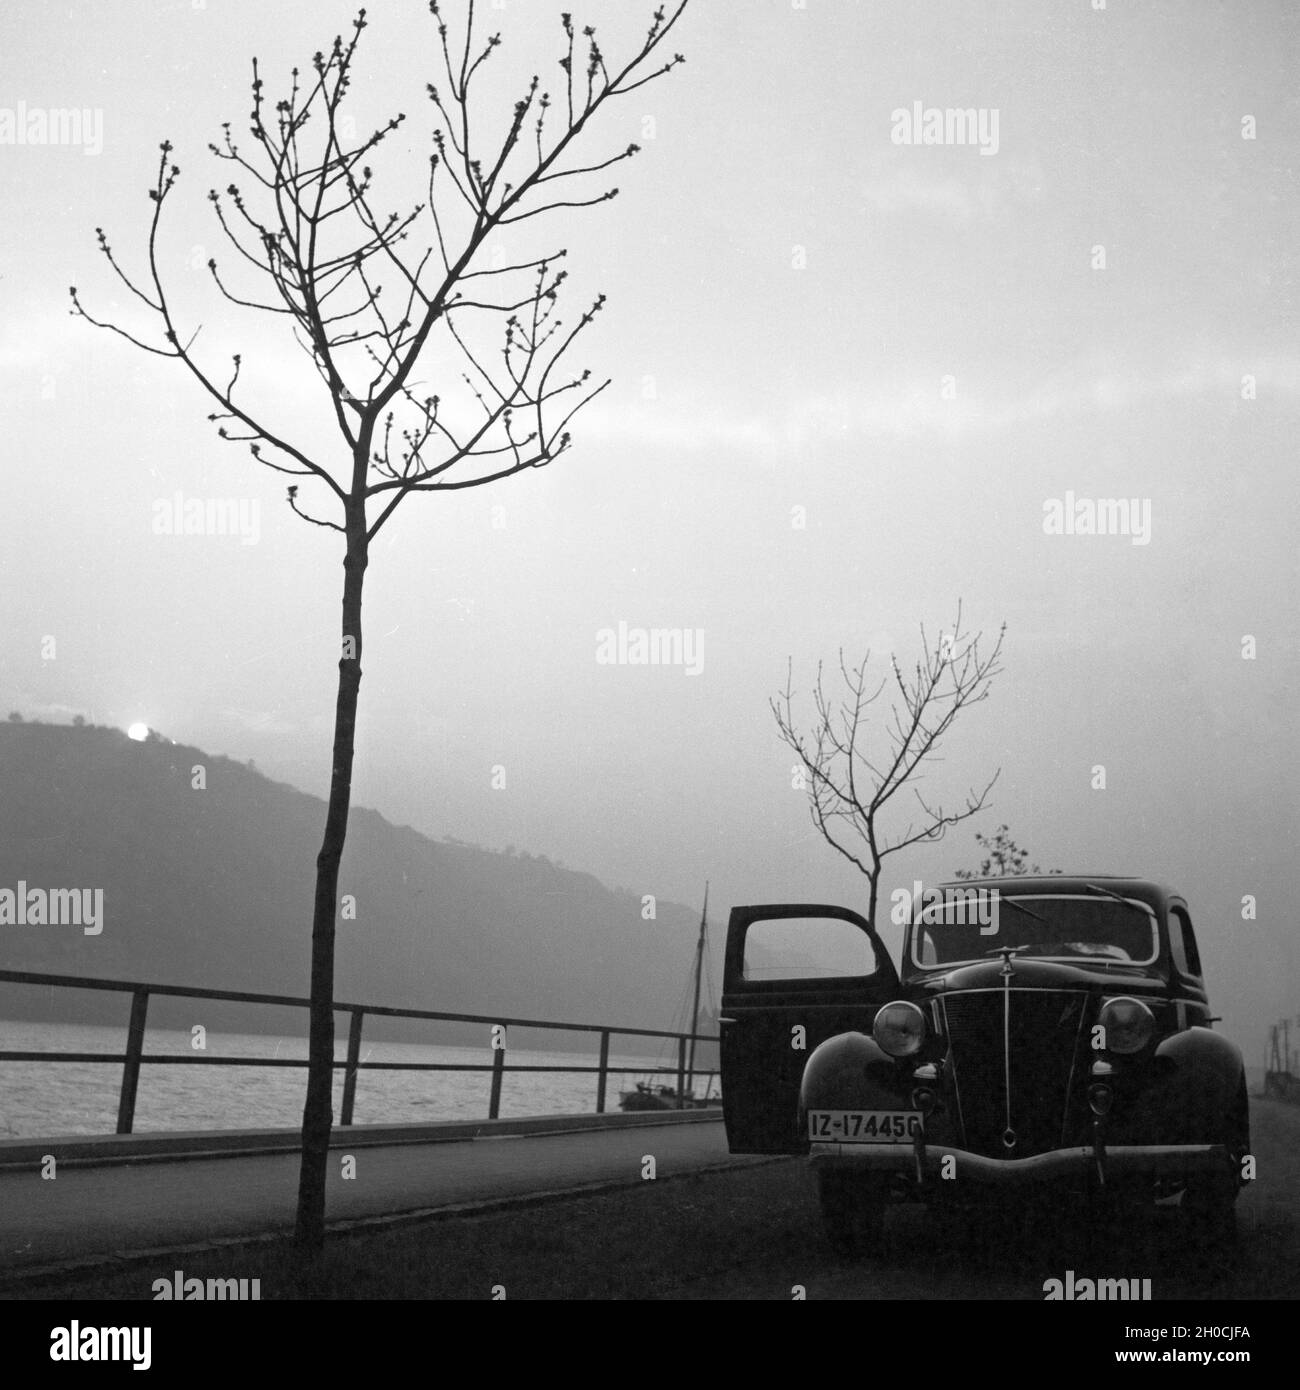 Mit dem Ford V8 unterwegs am Rhein, Deutschland 1930er Jahre. With the Ford V8 at river Rhine, Germany 1930s. Stock Photo